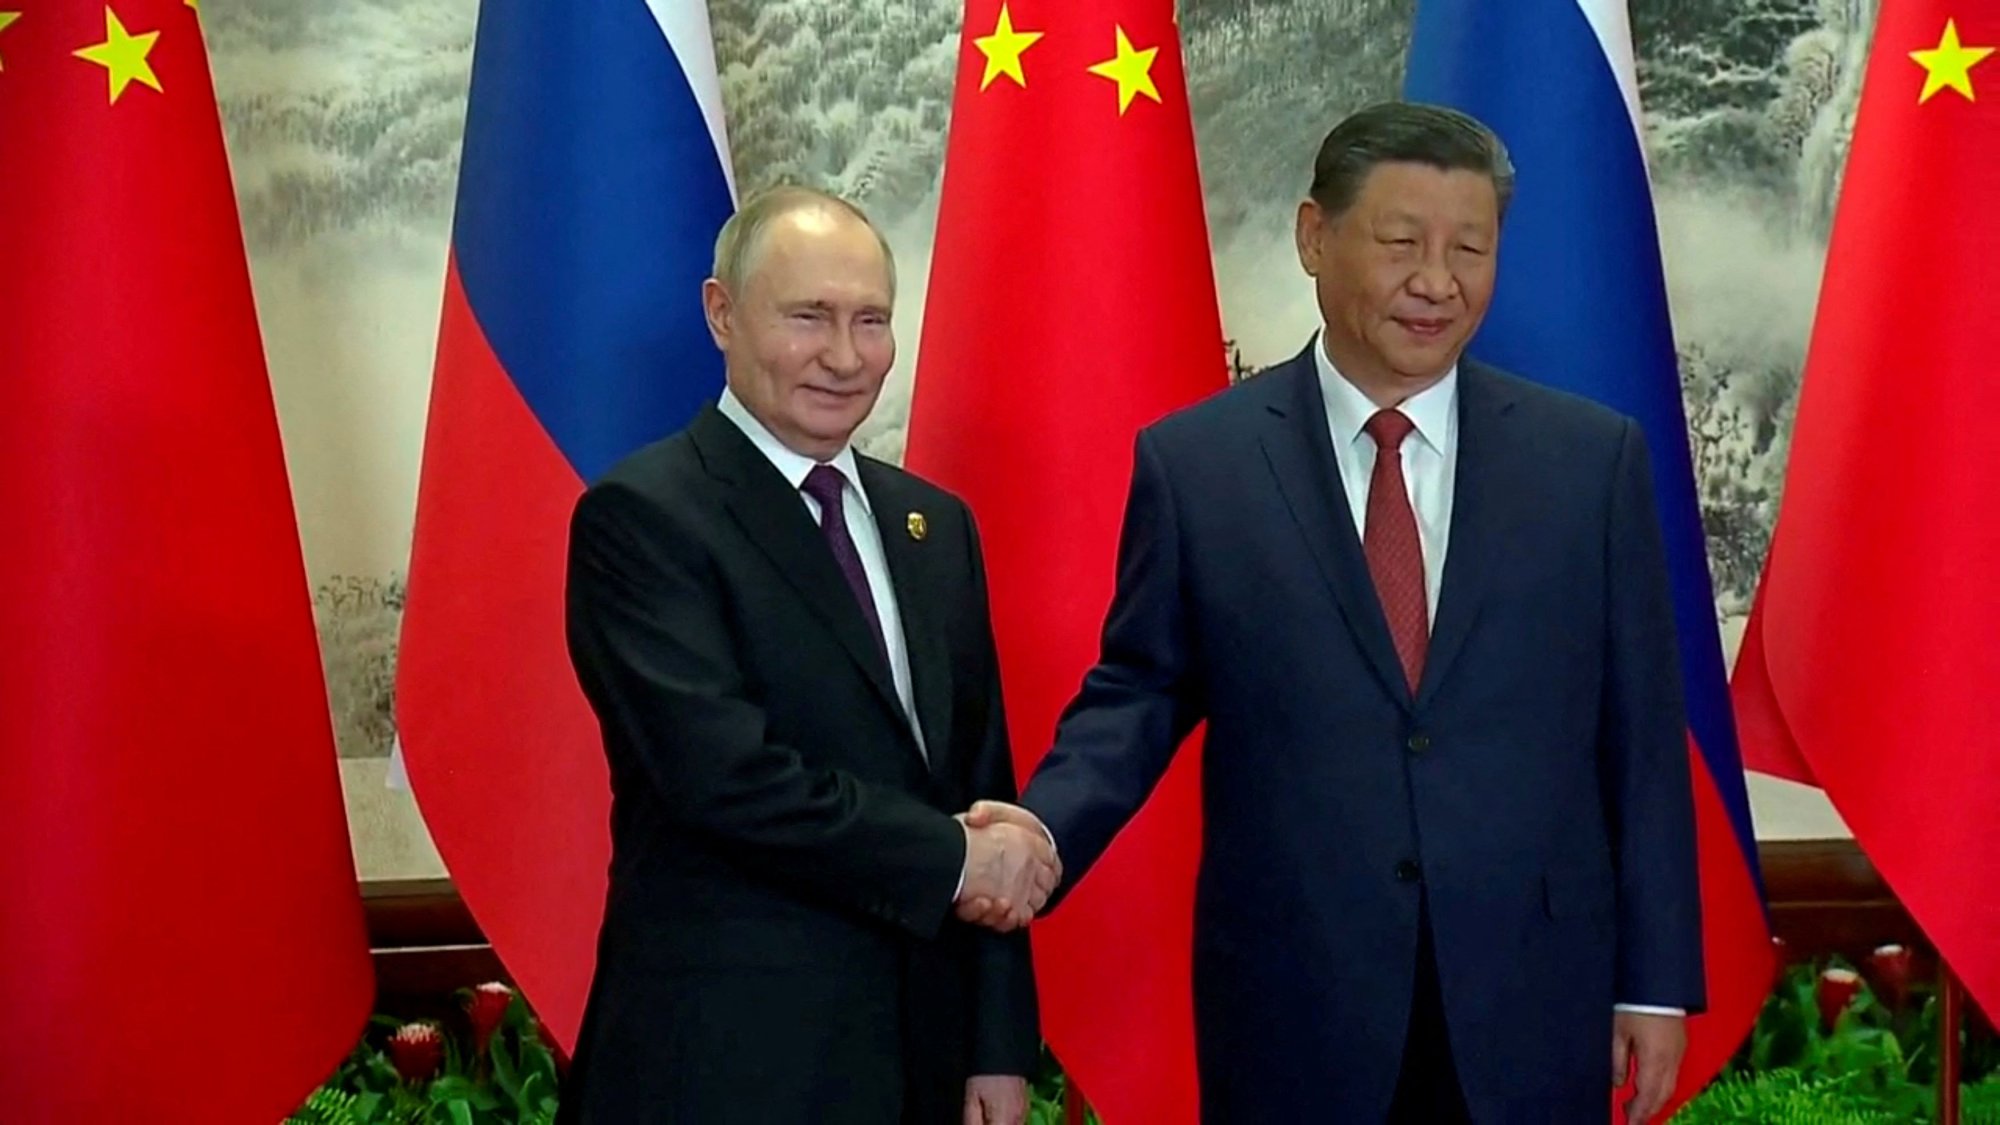 Συνάντηση Σι Τζινπίνγκ και Πούτιν στο Πεκίνο - Αντάλλαξαν θερμή χειραψία